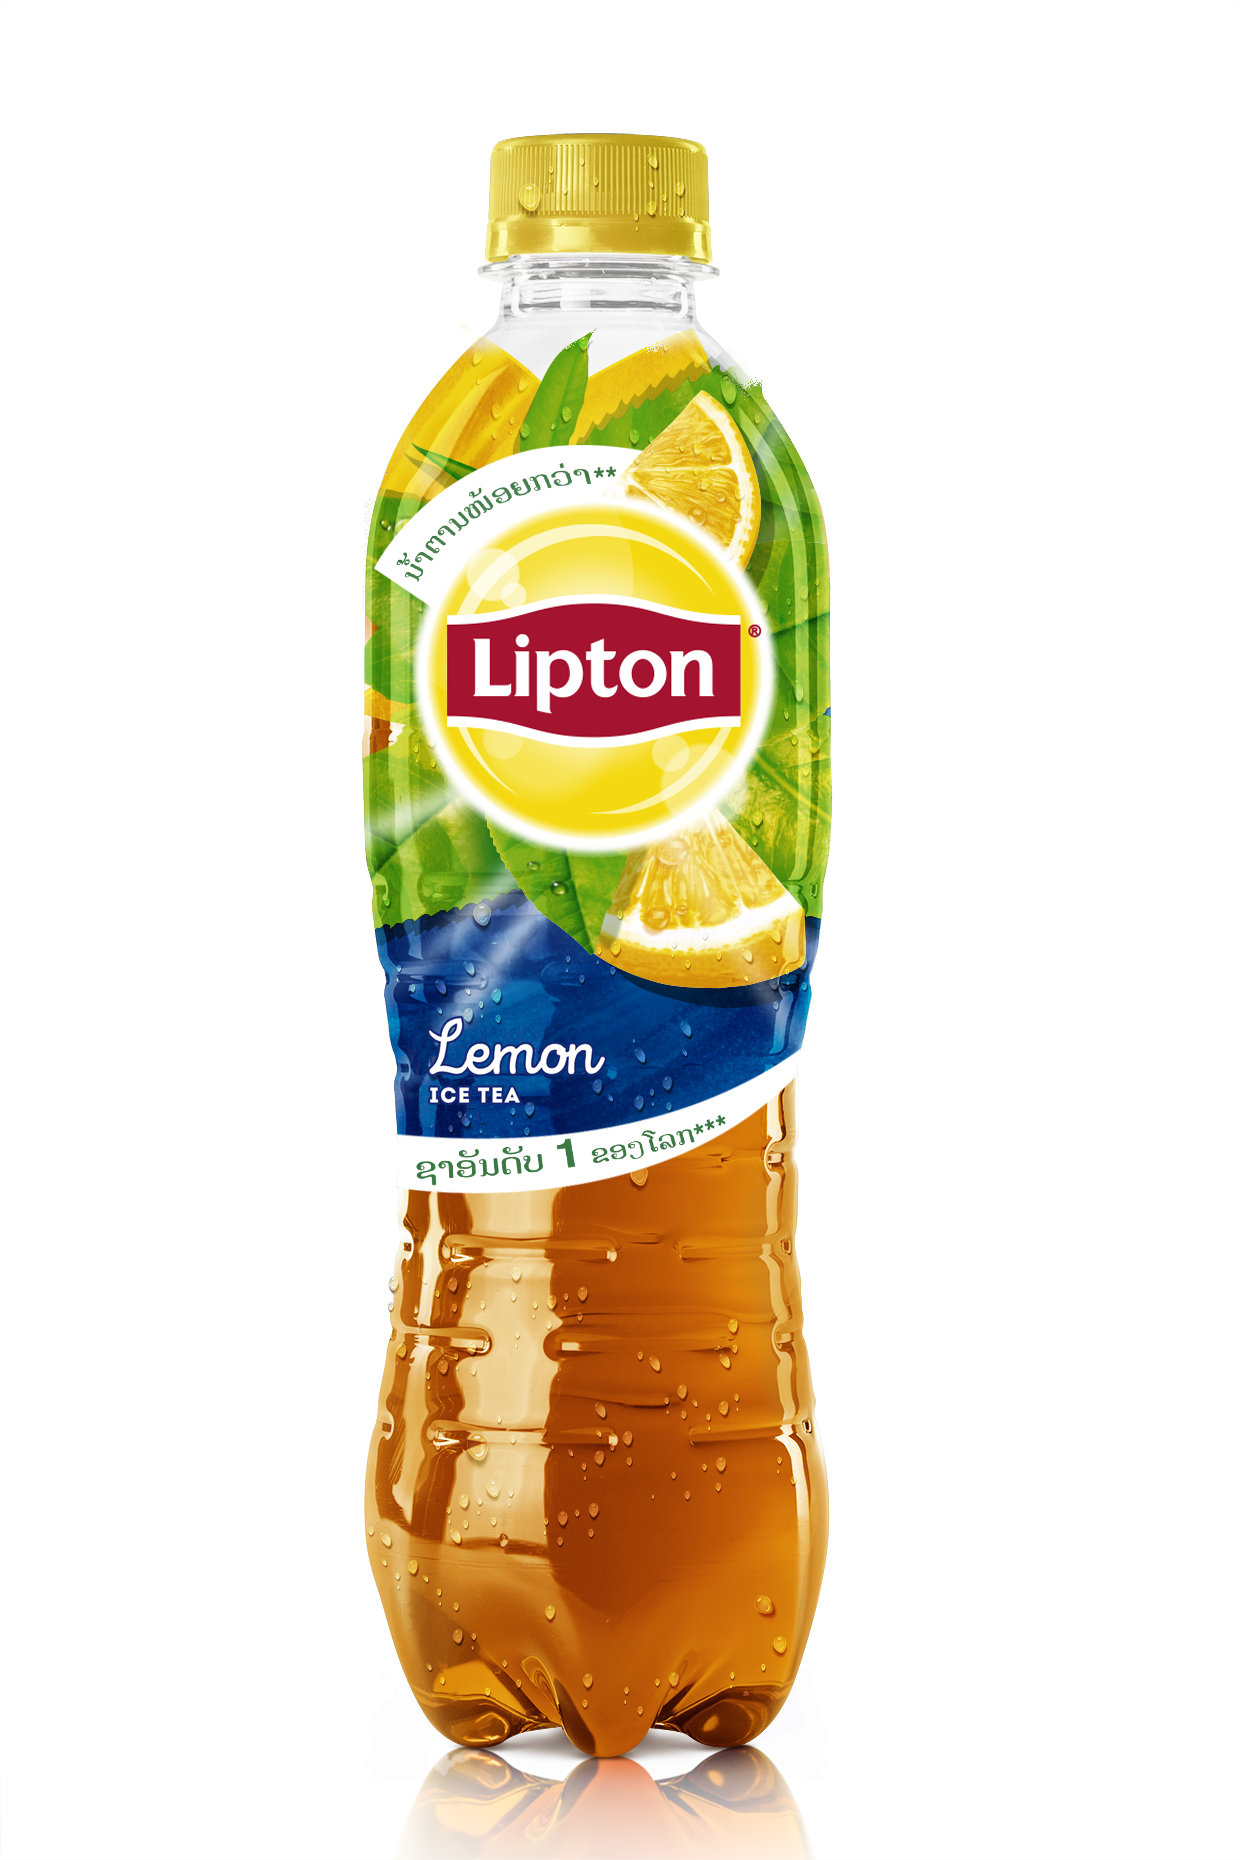 Картинки липтона. Липтон чай в бутылках черный лимон. Липтон зеленый чай 0.5. Лептоны это. Липтон чай лимон 0.5.